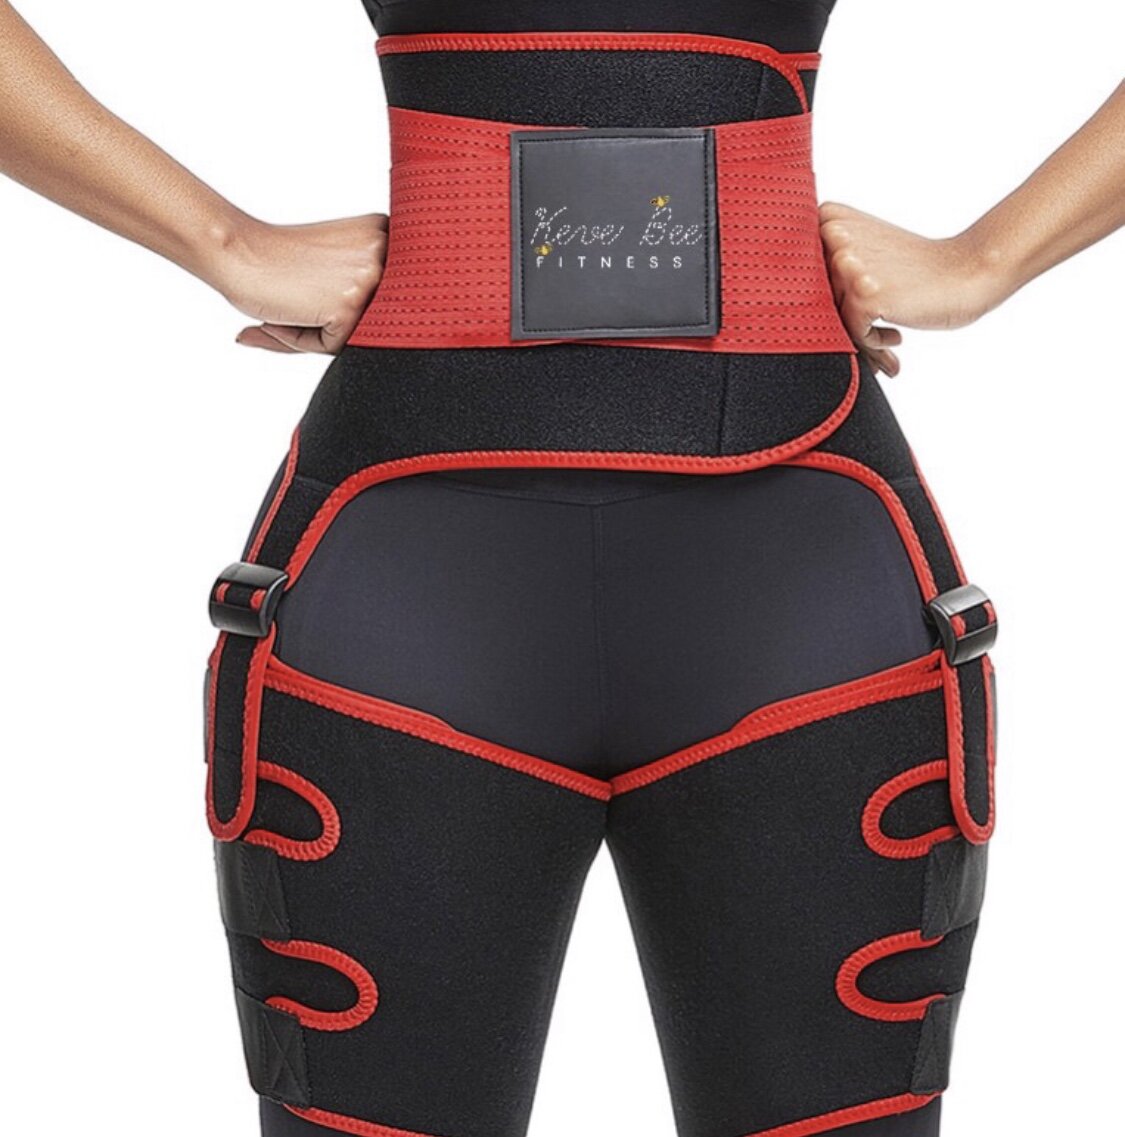 Sweat Waist Thigh Trimmer Trainer Belt Corset For Women, 3 In 1 Butt Lifter